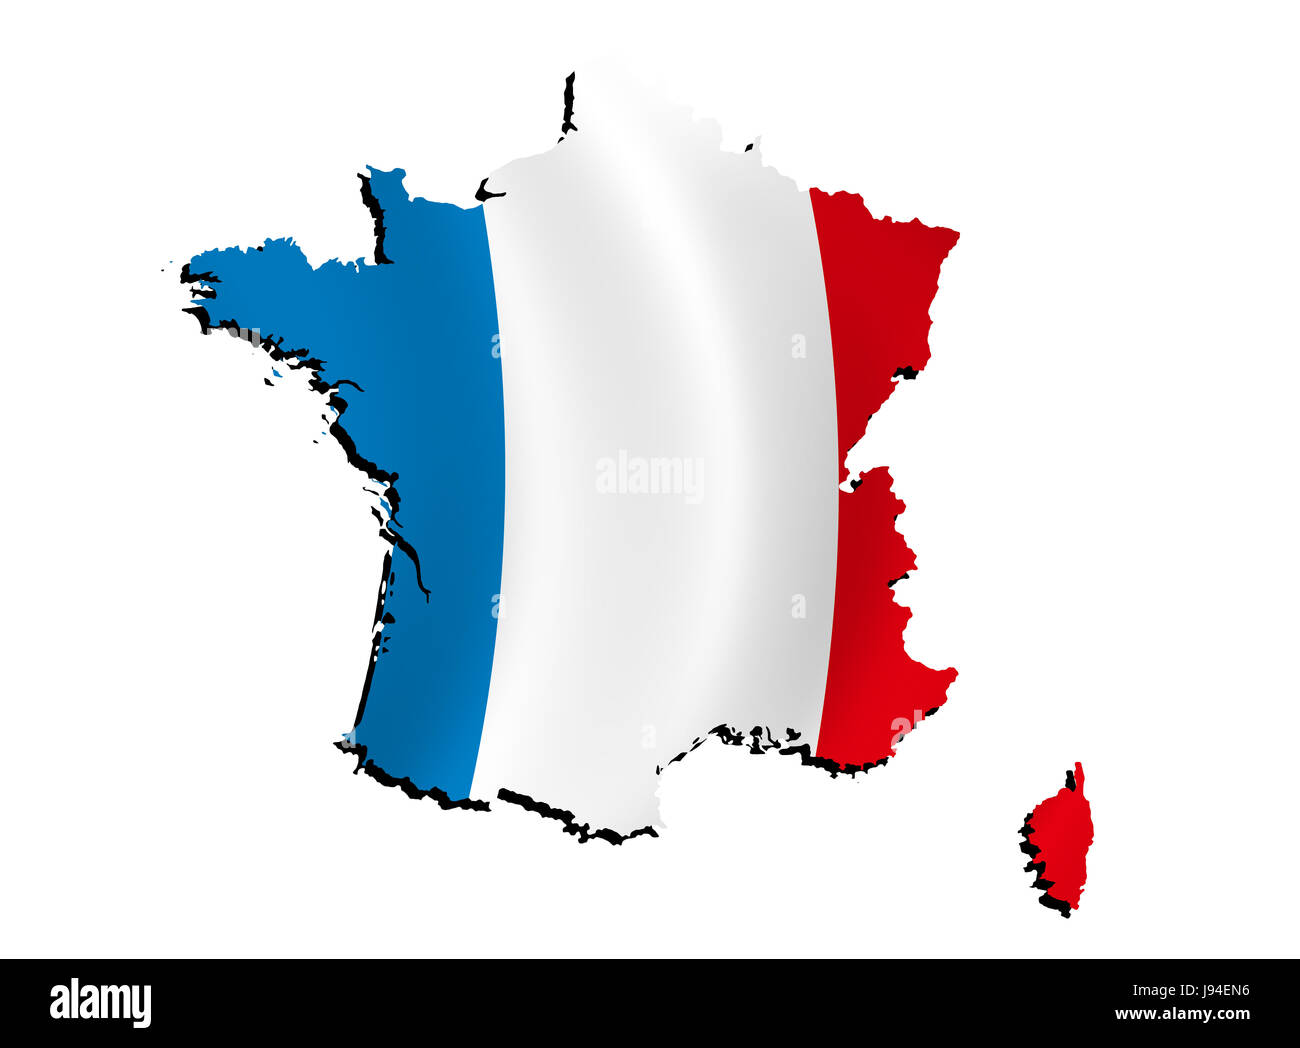 Francia, bandera, borde, contorno, atlas, mapa del mundo, mapa, detalle, aislado Foto de stock